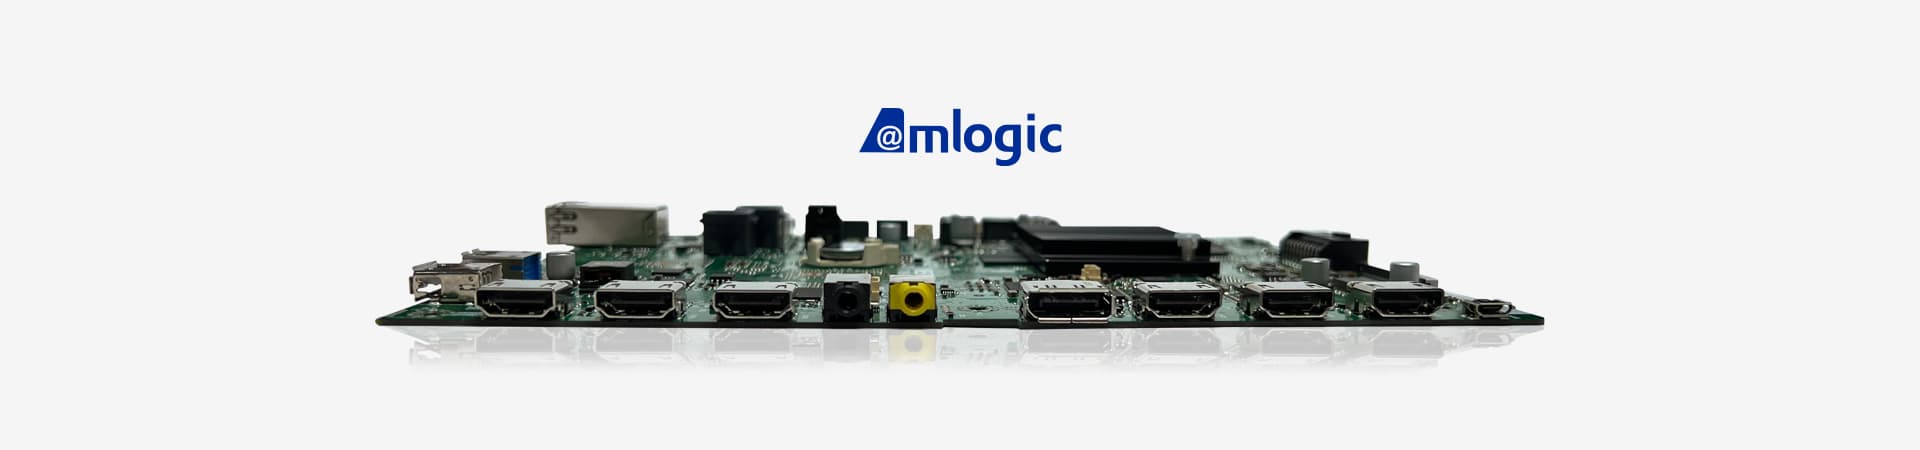 AMLogic-based Design for Smart TV and Digital Signage